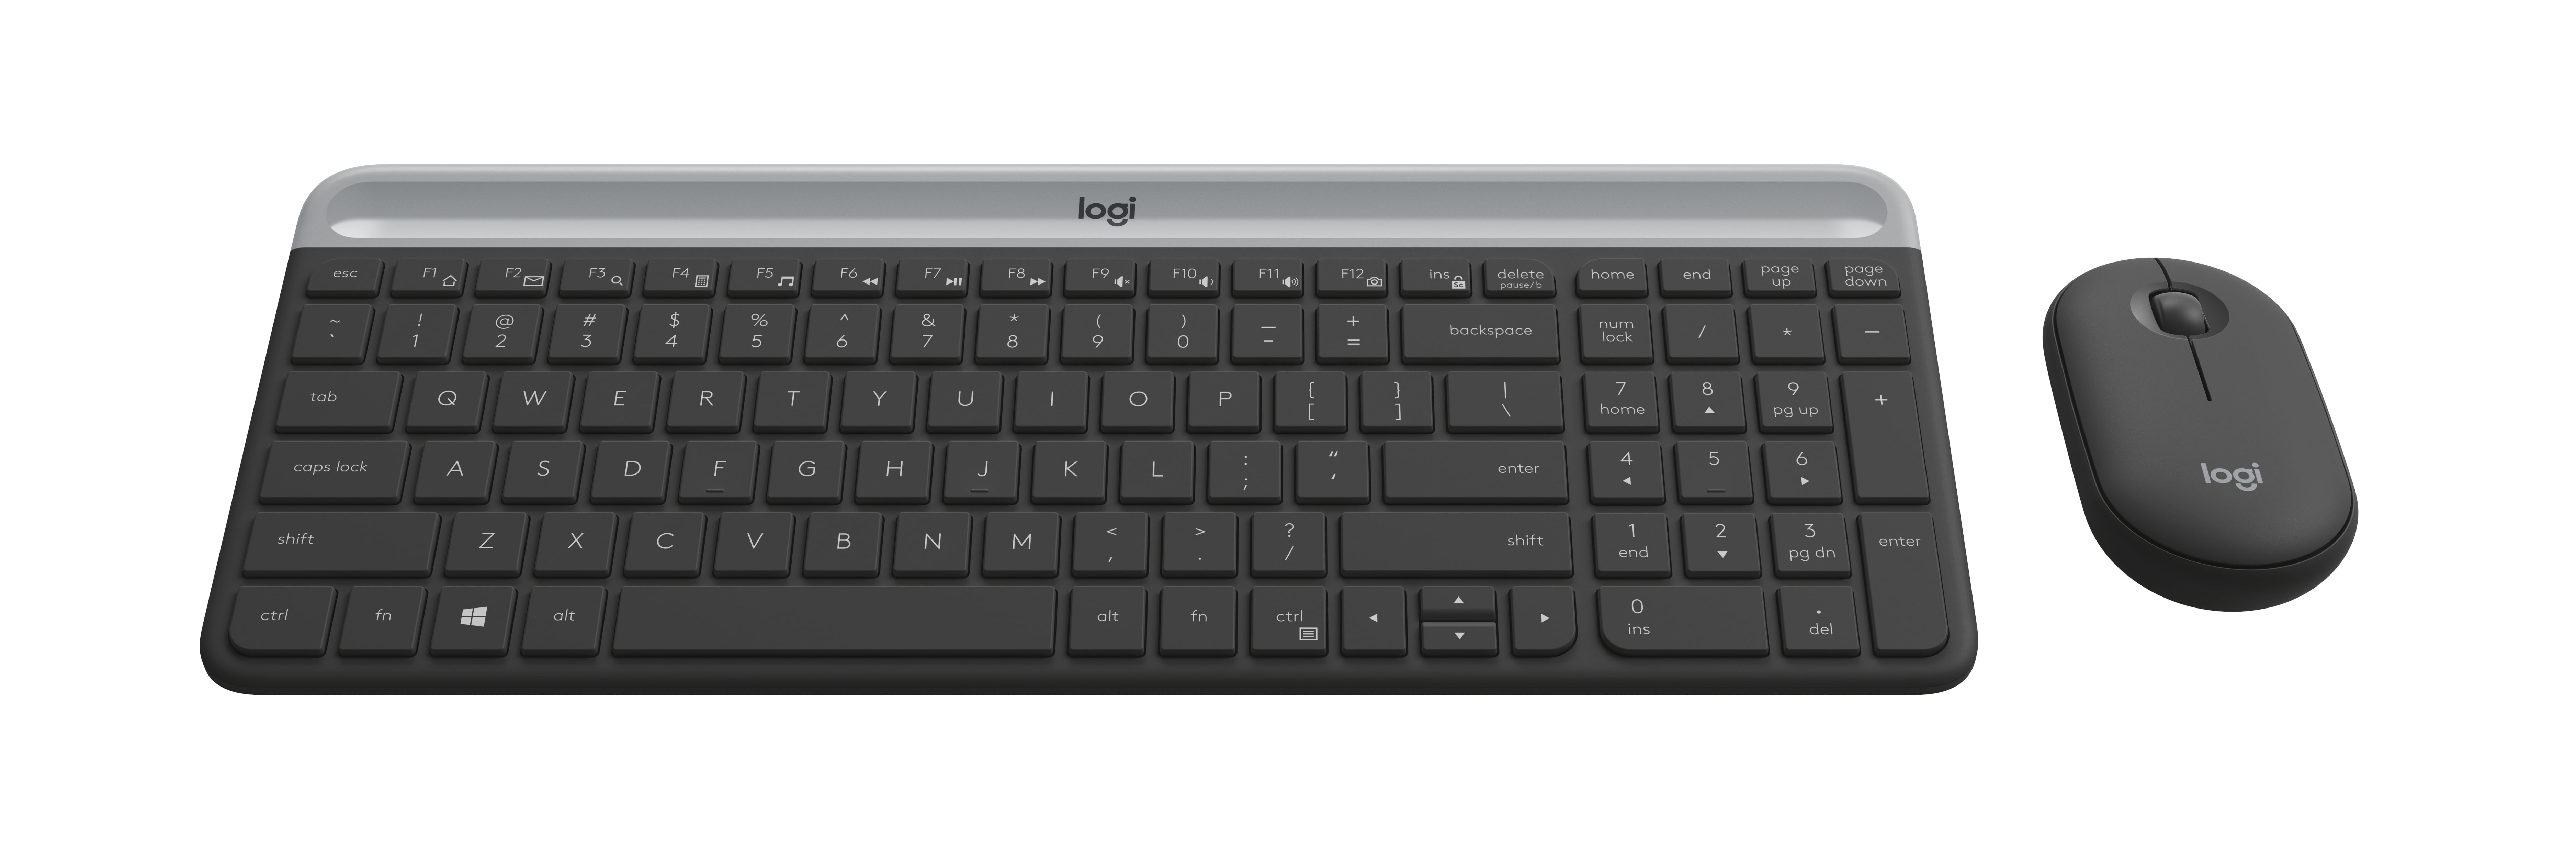 Rii i8 + 2.4 GHz mini teclado inalámbrico con Touchpad (ratón, LED  retroiluminación, batería de iones de litio recargable (actualizado 2017